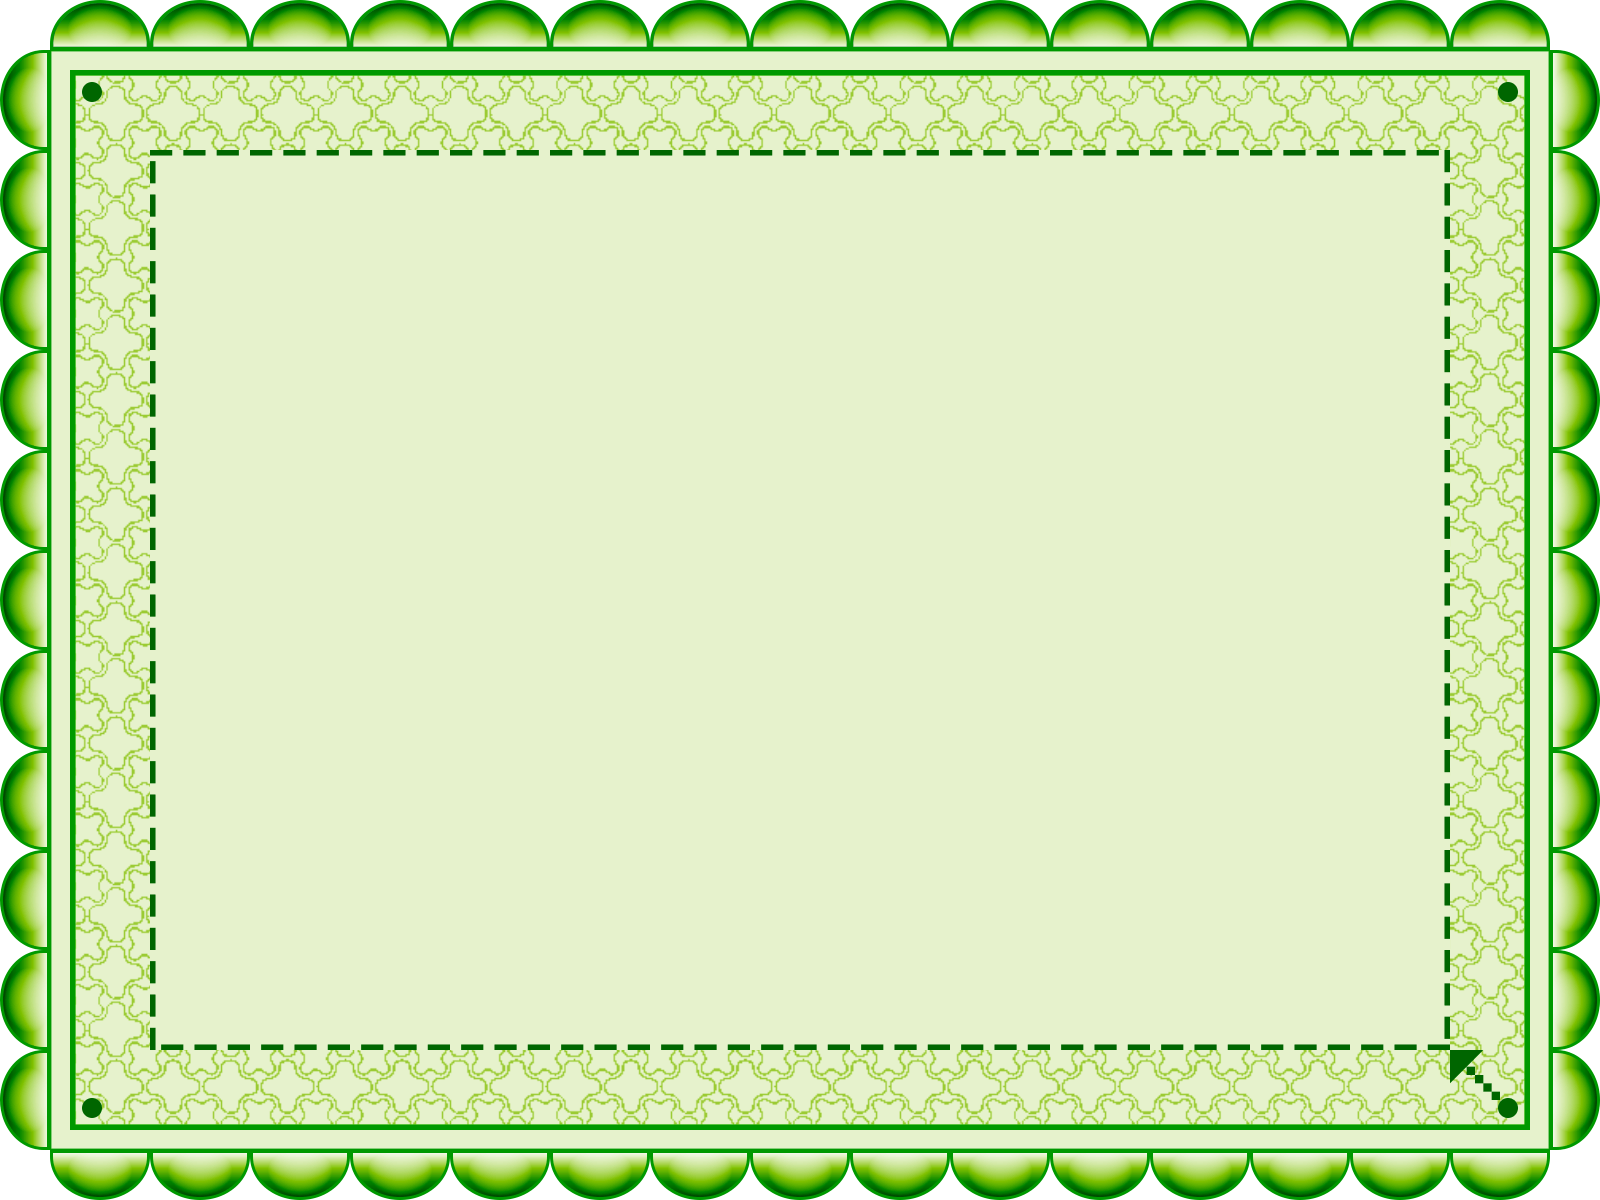 Green Patterned Frame